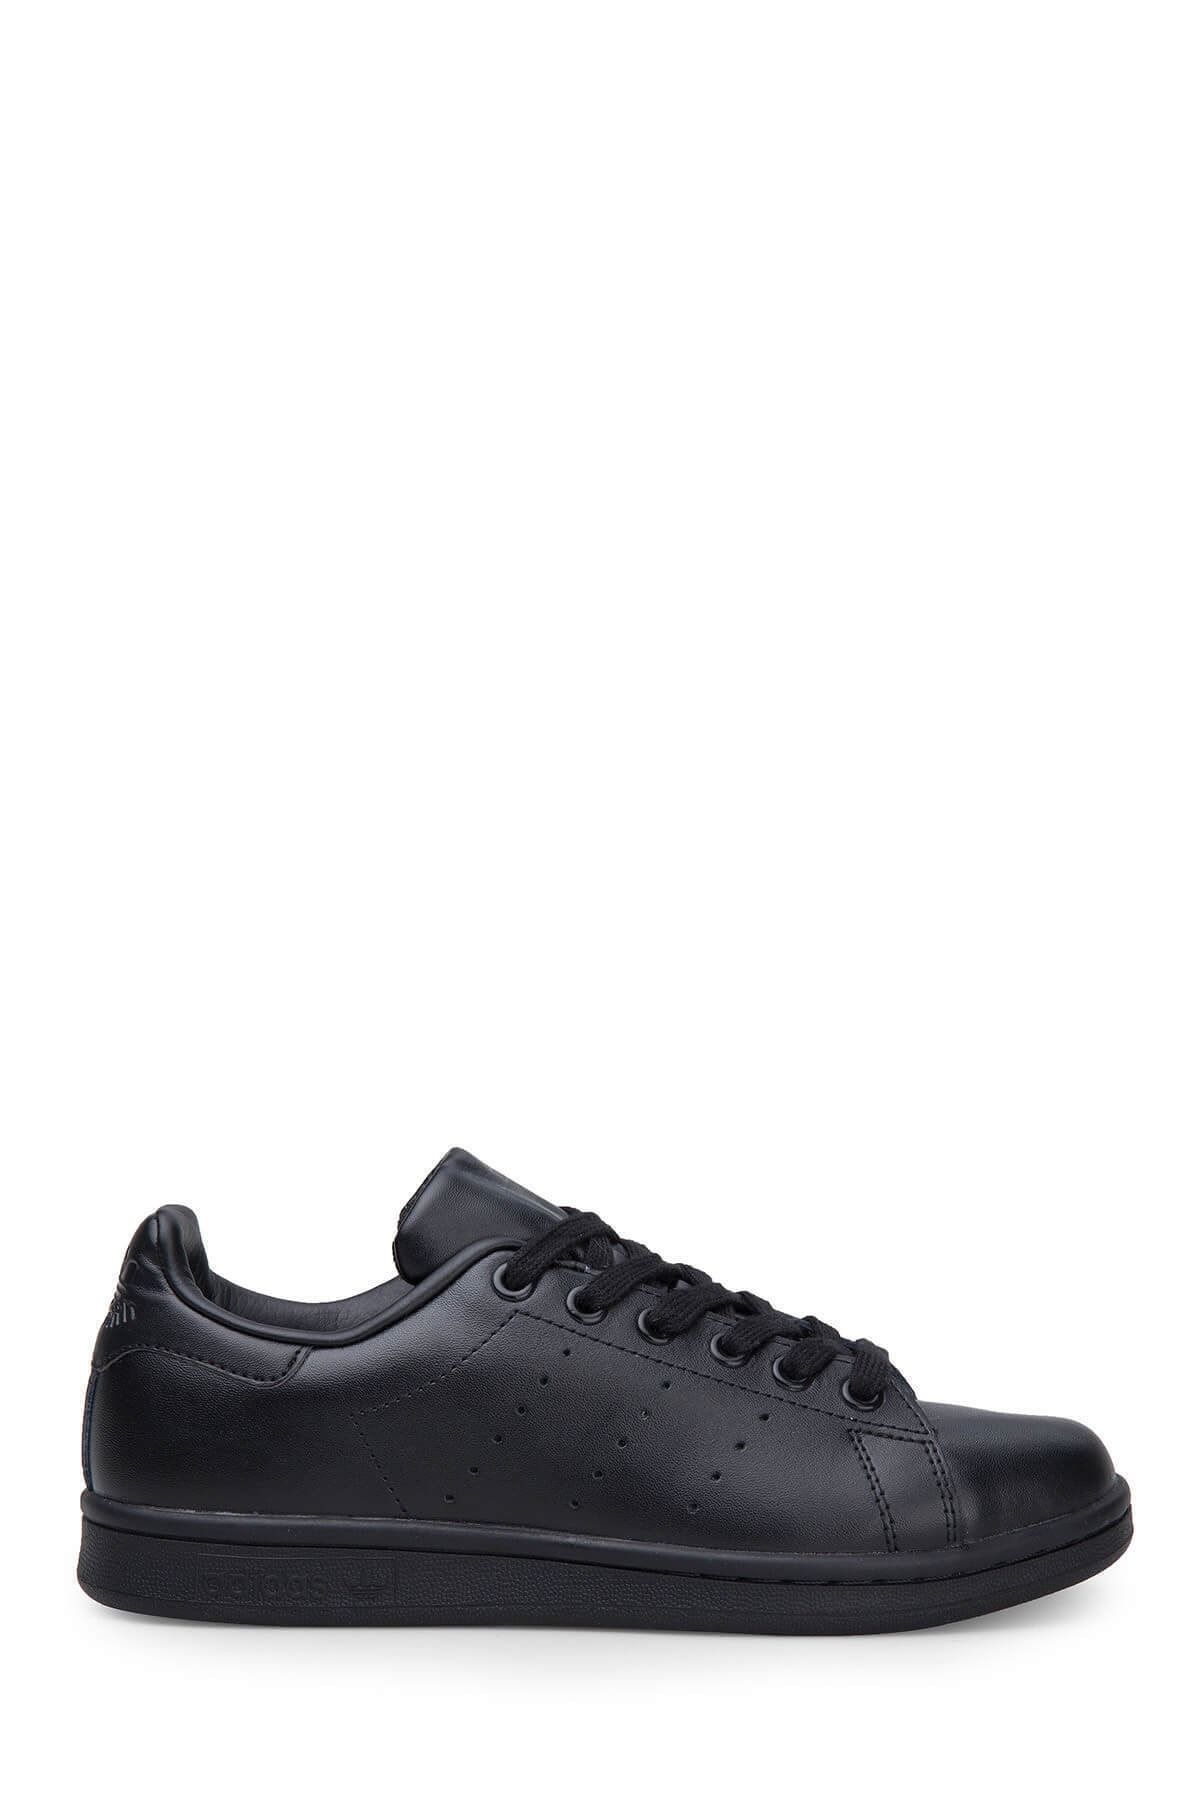 adidas Stan Smıth Erkek Günlük Ayakkabı